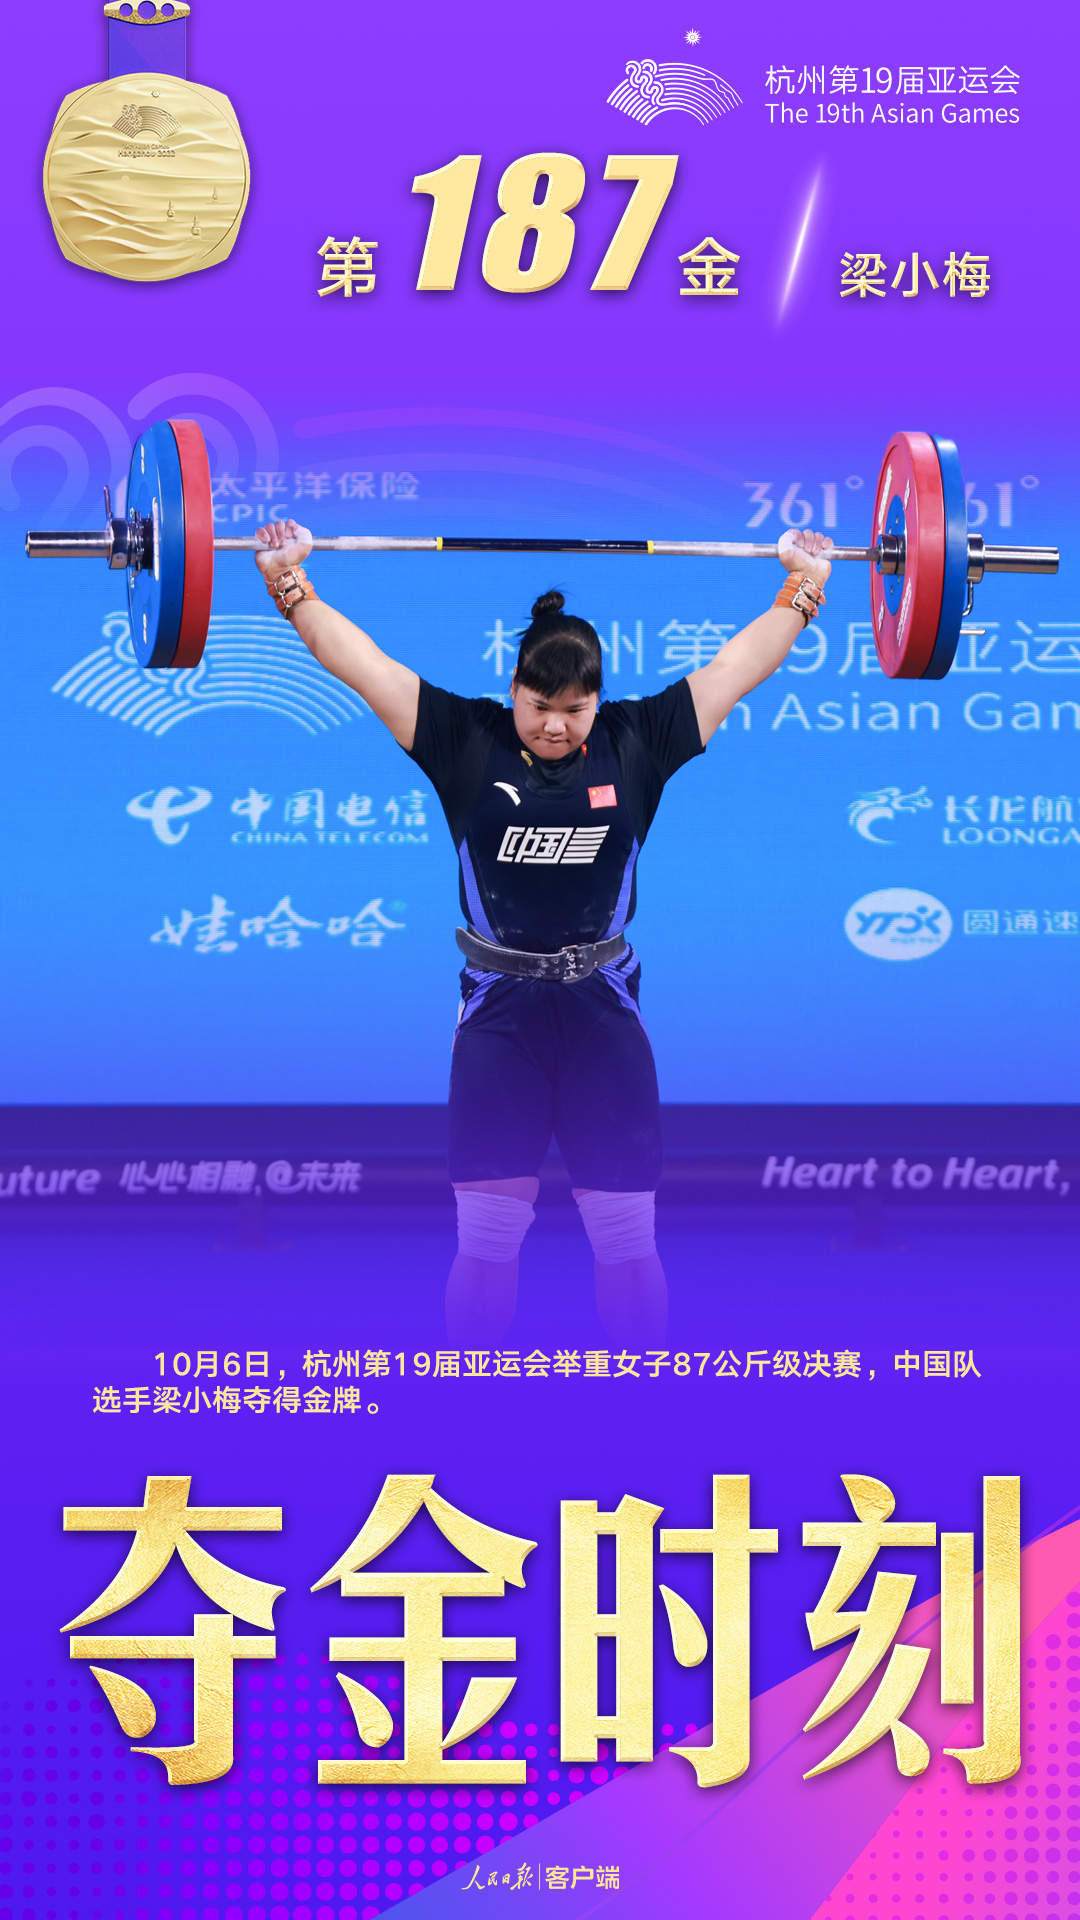 梁小梅夺得举重女子87公斤级金牌